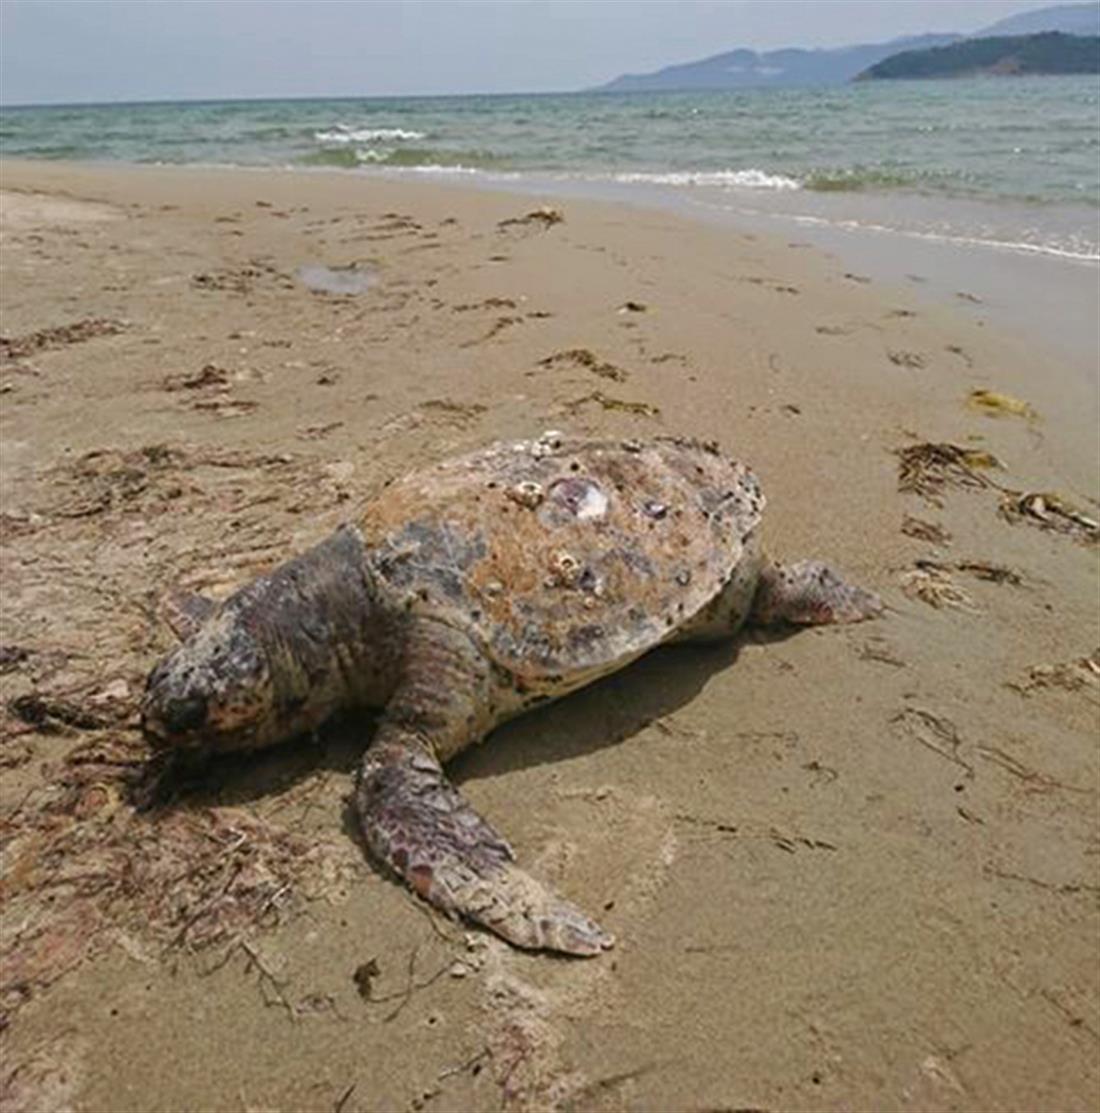 θαλάσσια χελώνα - νεκρή - παραλία Κεραμωτής - Καβάλα